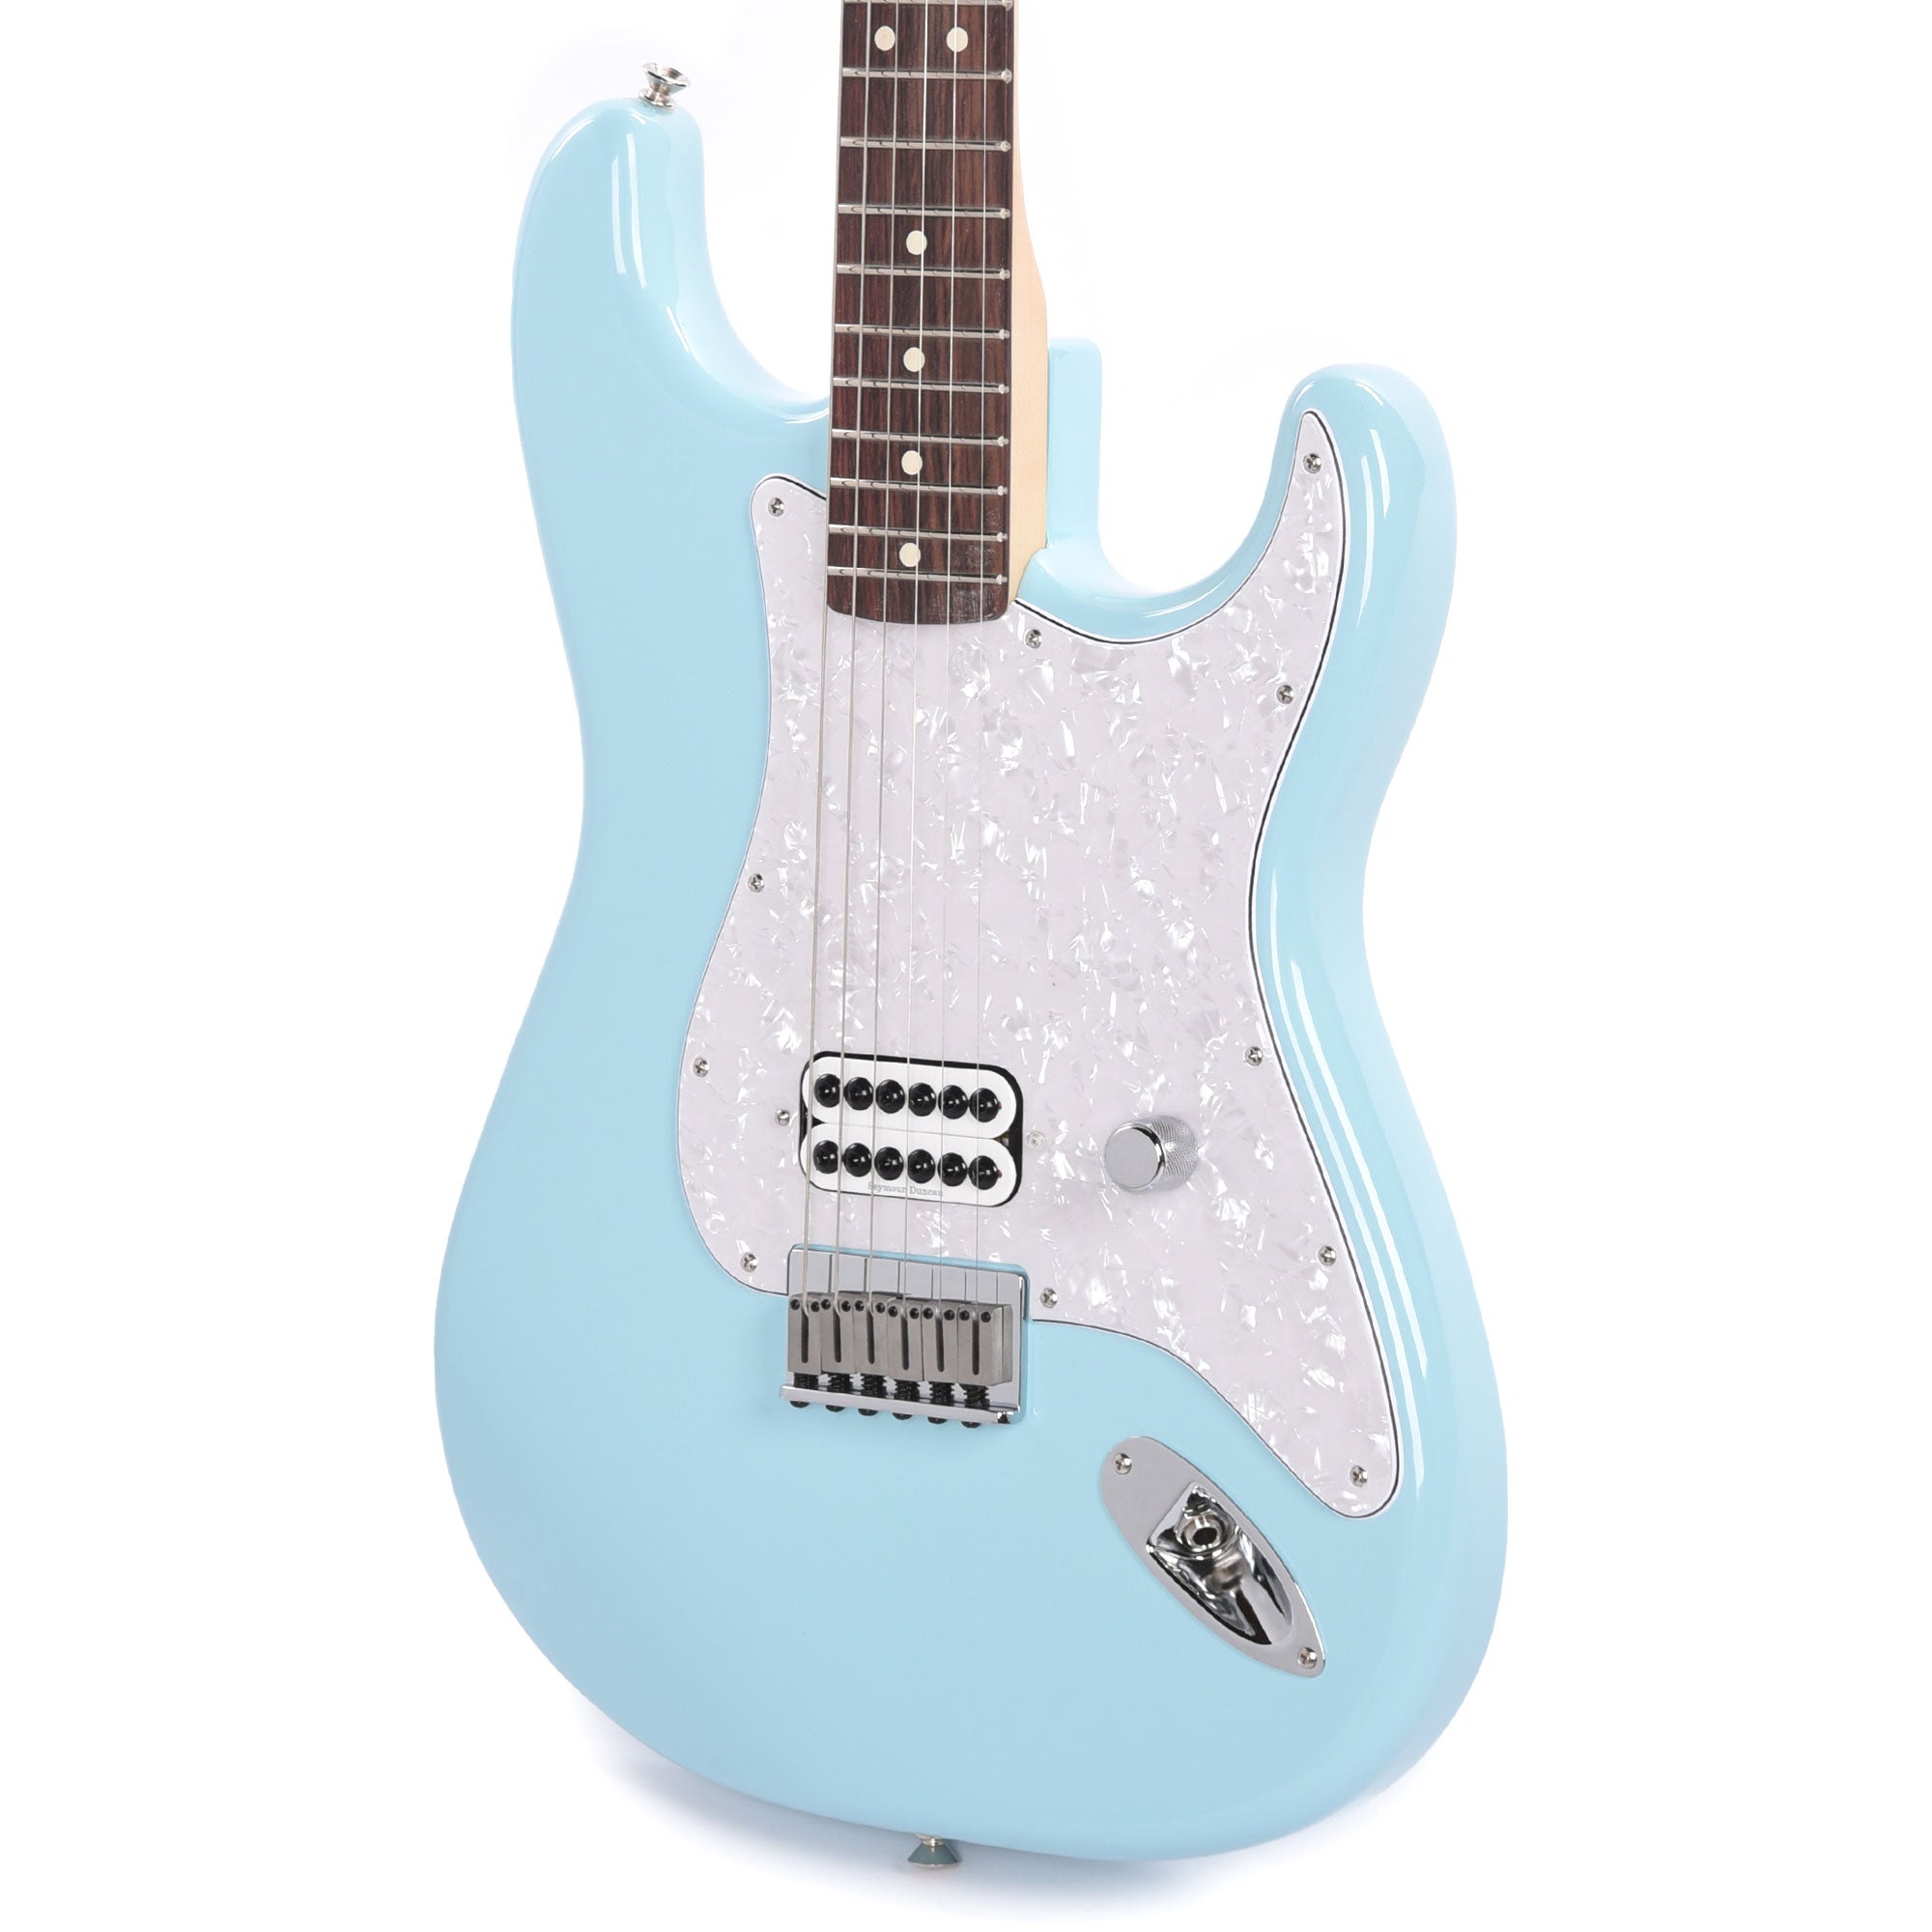 Fender Artist Limited Edition Tom DeLonge Stratocaster Daphne Blue